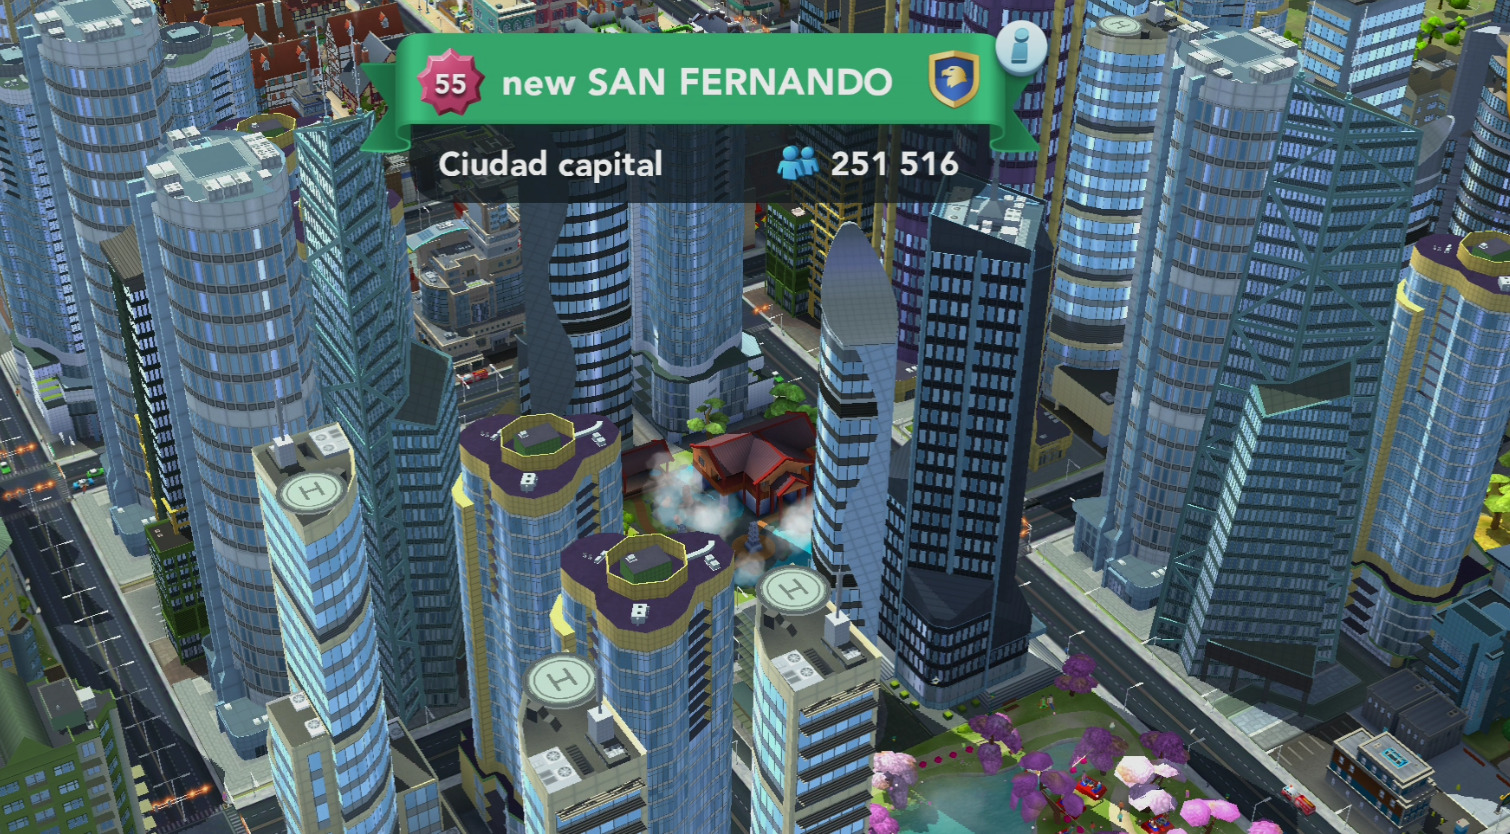 New San Fernando